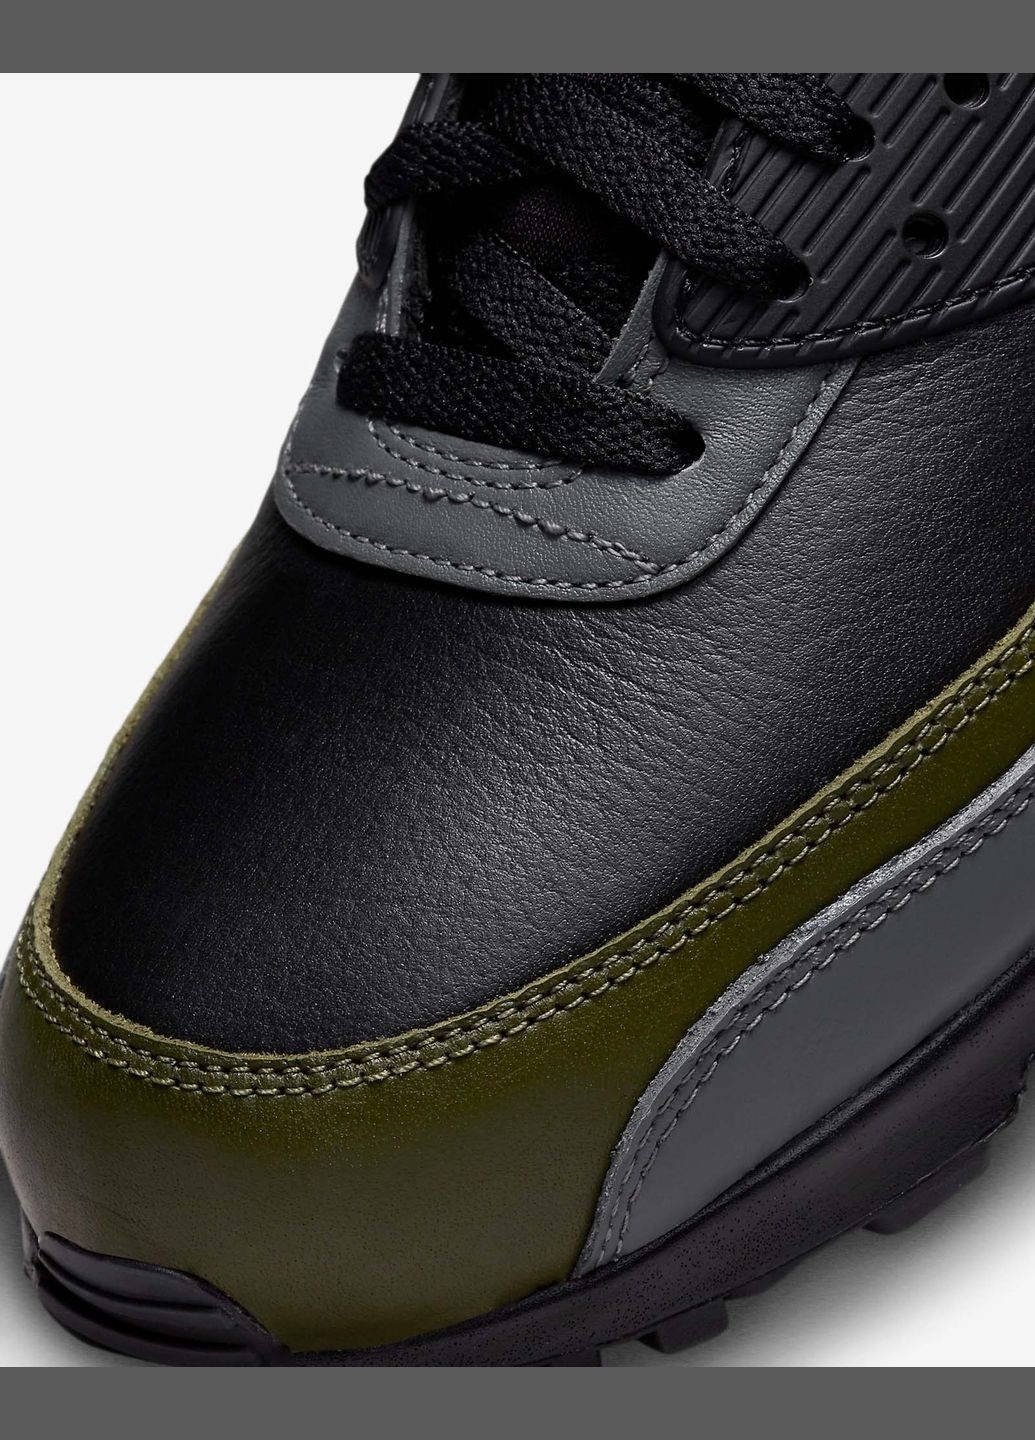 Зеленые всесезонные кроссовки мужские air max 90 gtx dj9779-001 весна-осень кожа текстиль мембрана черно-зеленые Nike